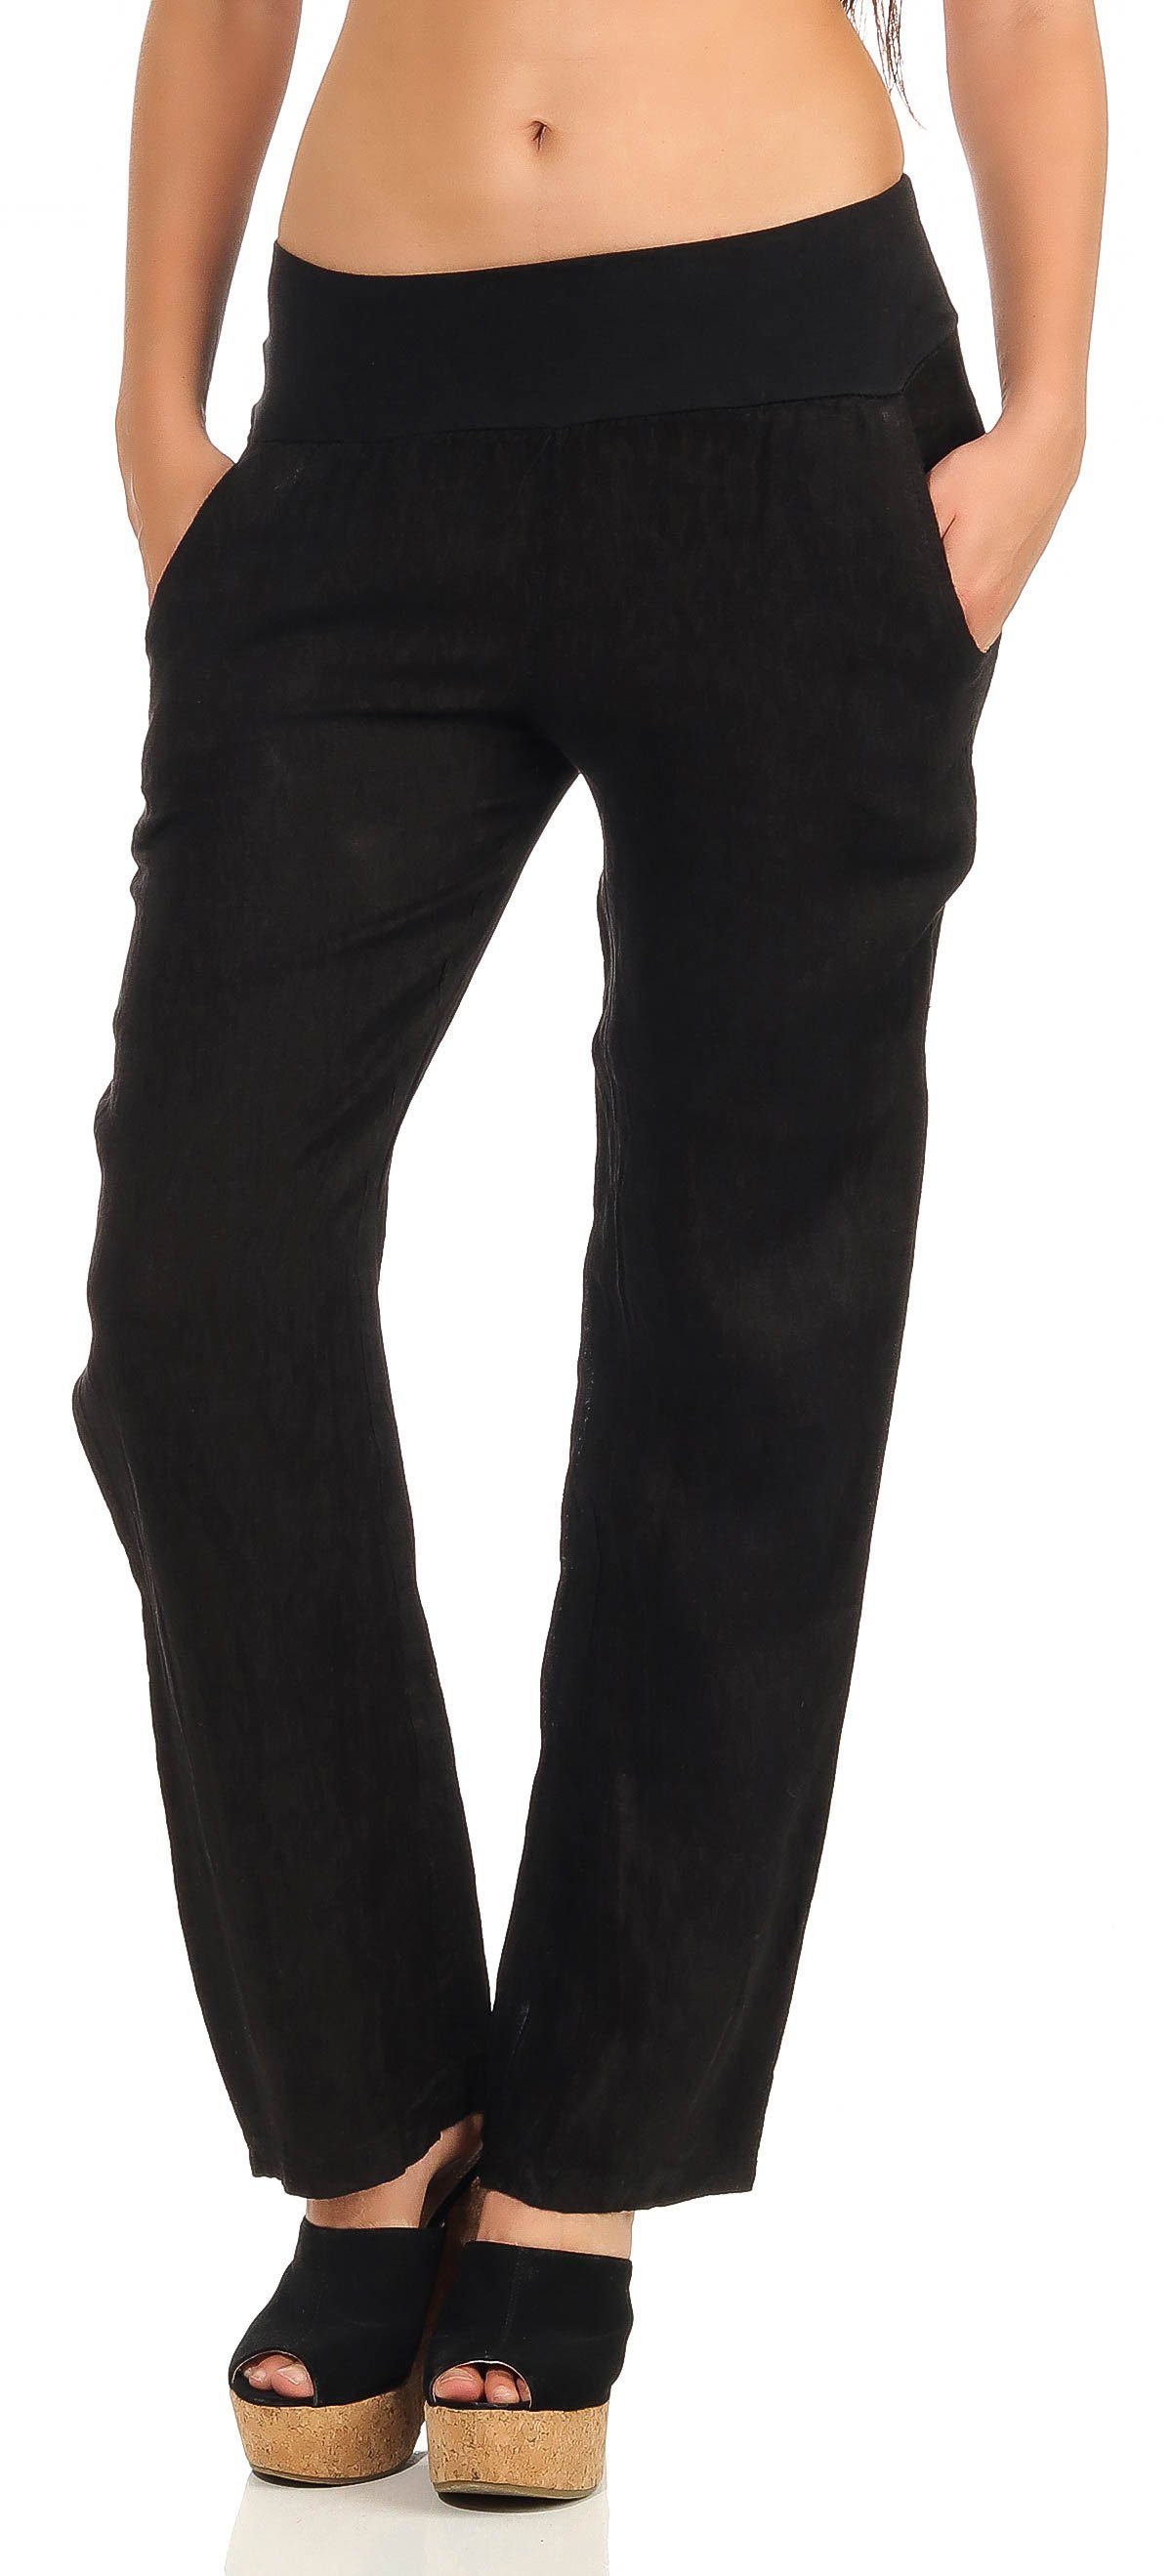 malito more than fashion Leinenhose 7792 leichte Stoffhose mit elastischem Bund schwarz | Weite Hosen